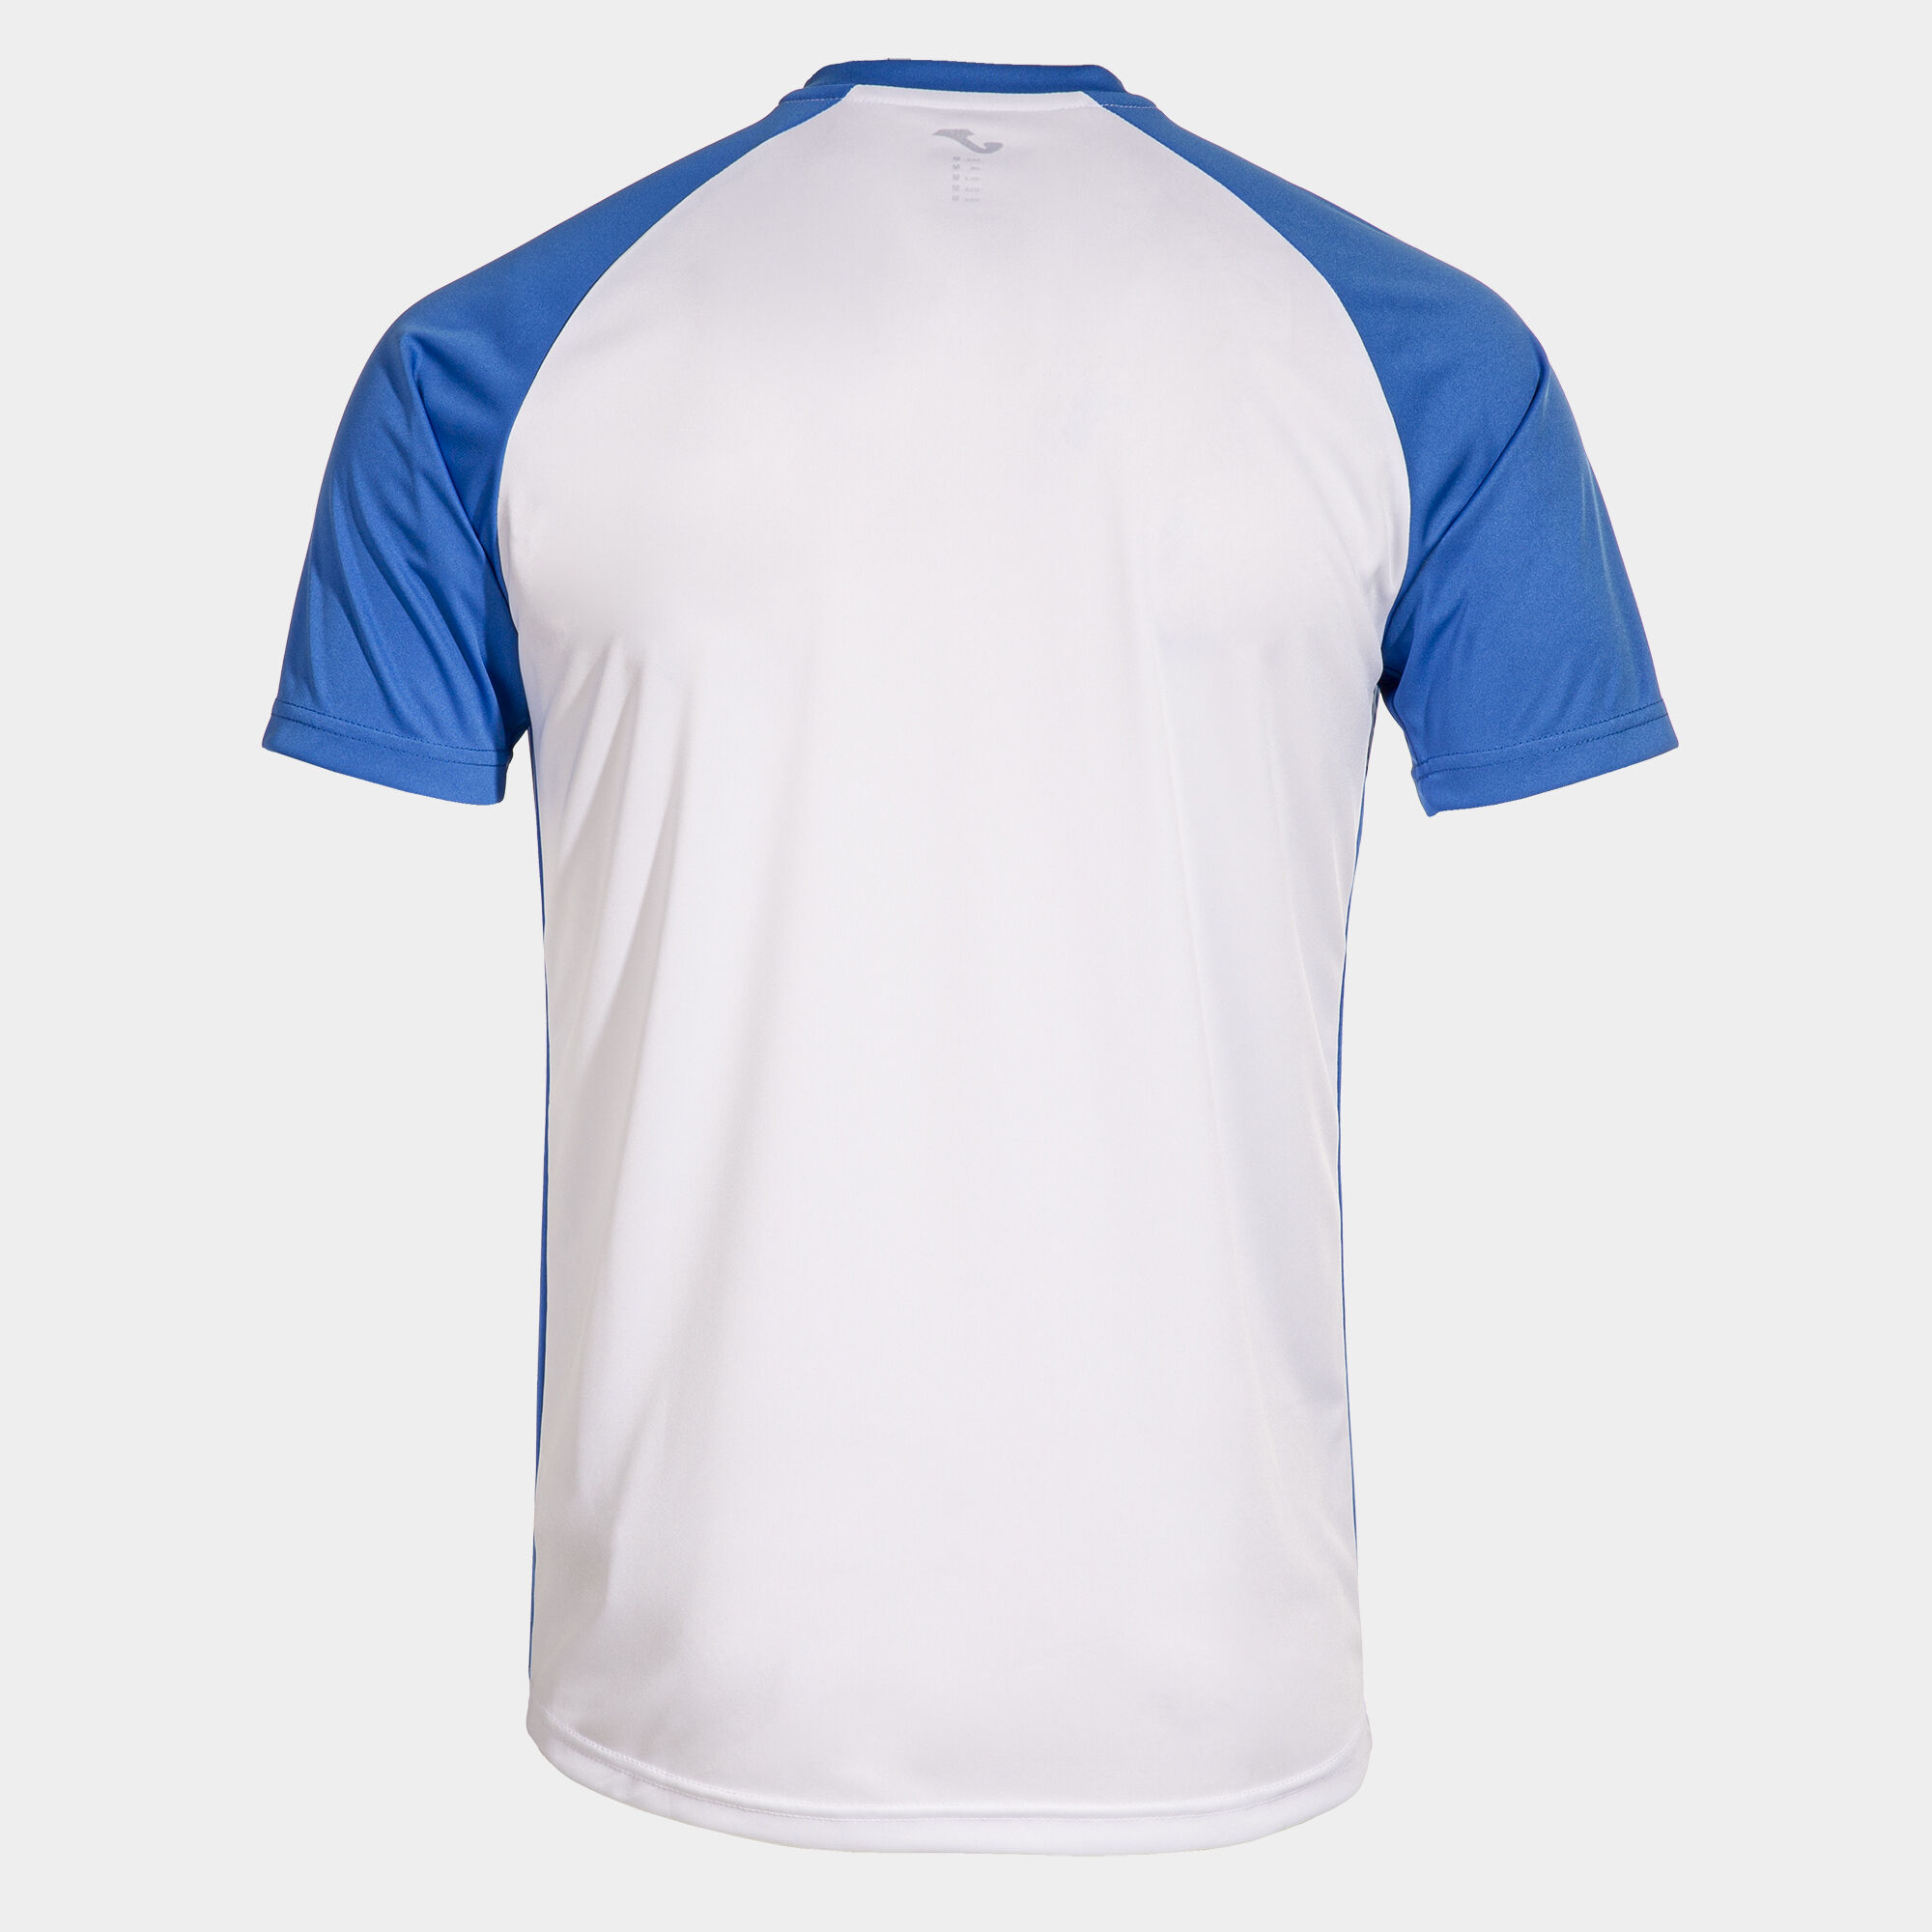 Shirt short sleeve man Tiger VI white royal blue